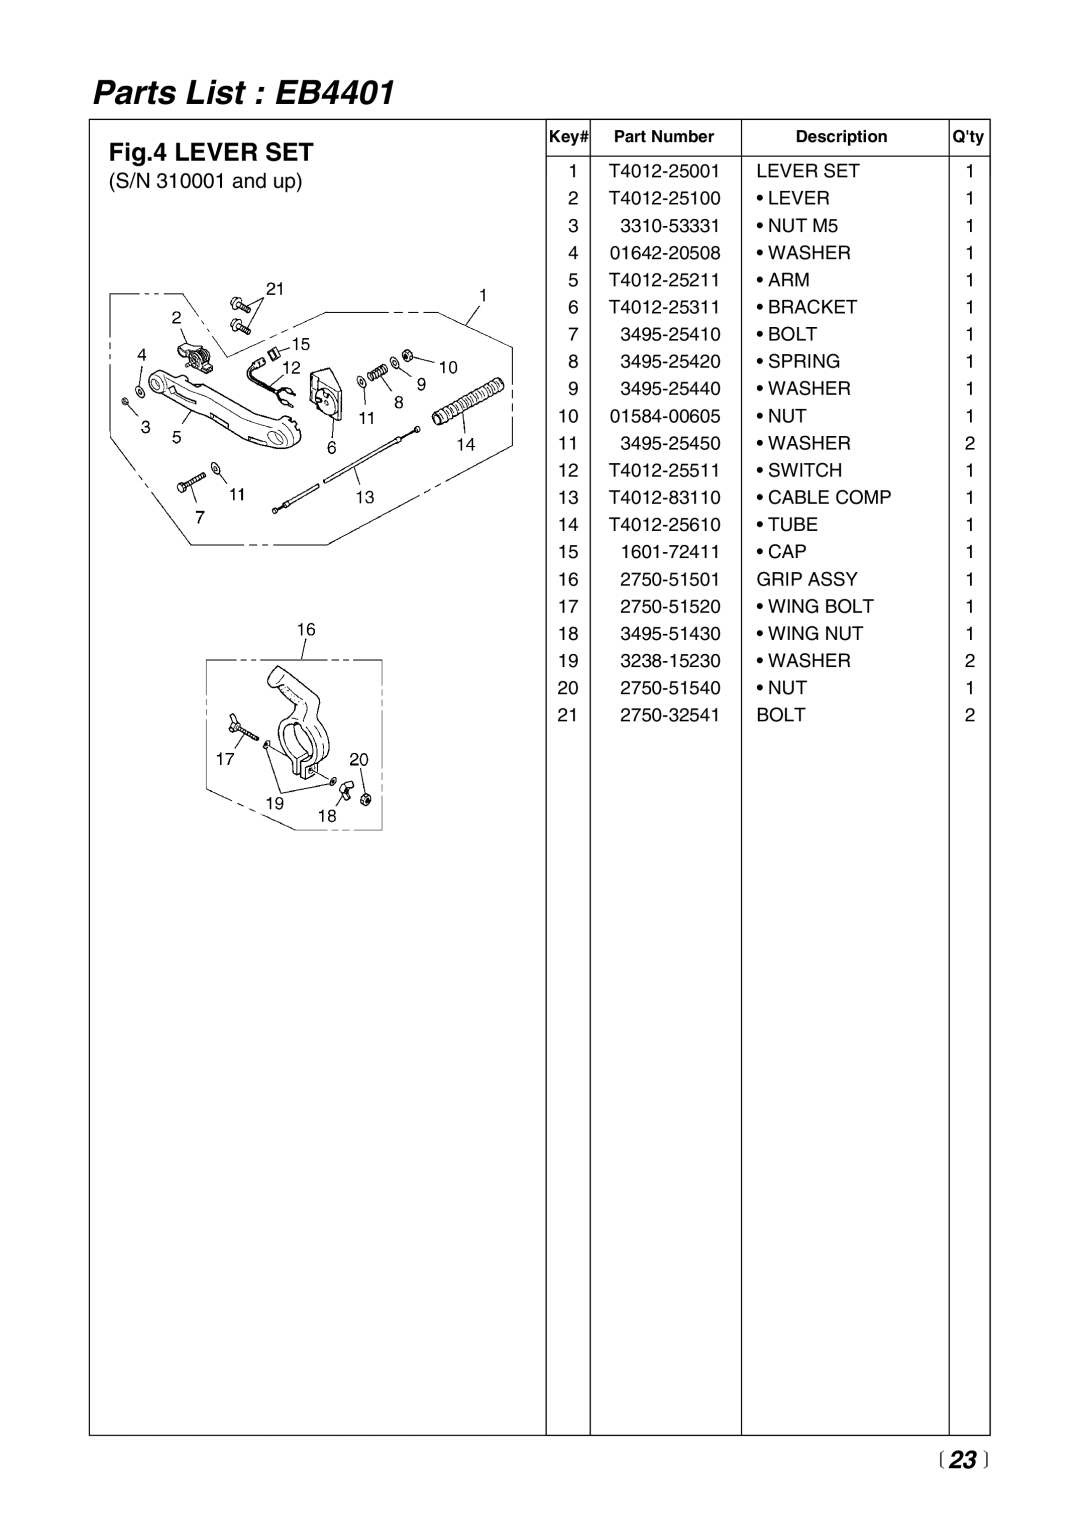 RedMax manual Parts List EB4401, Lever Set, 23  